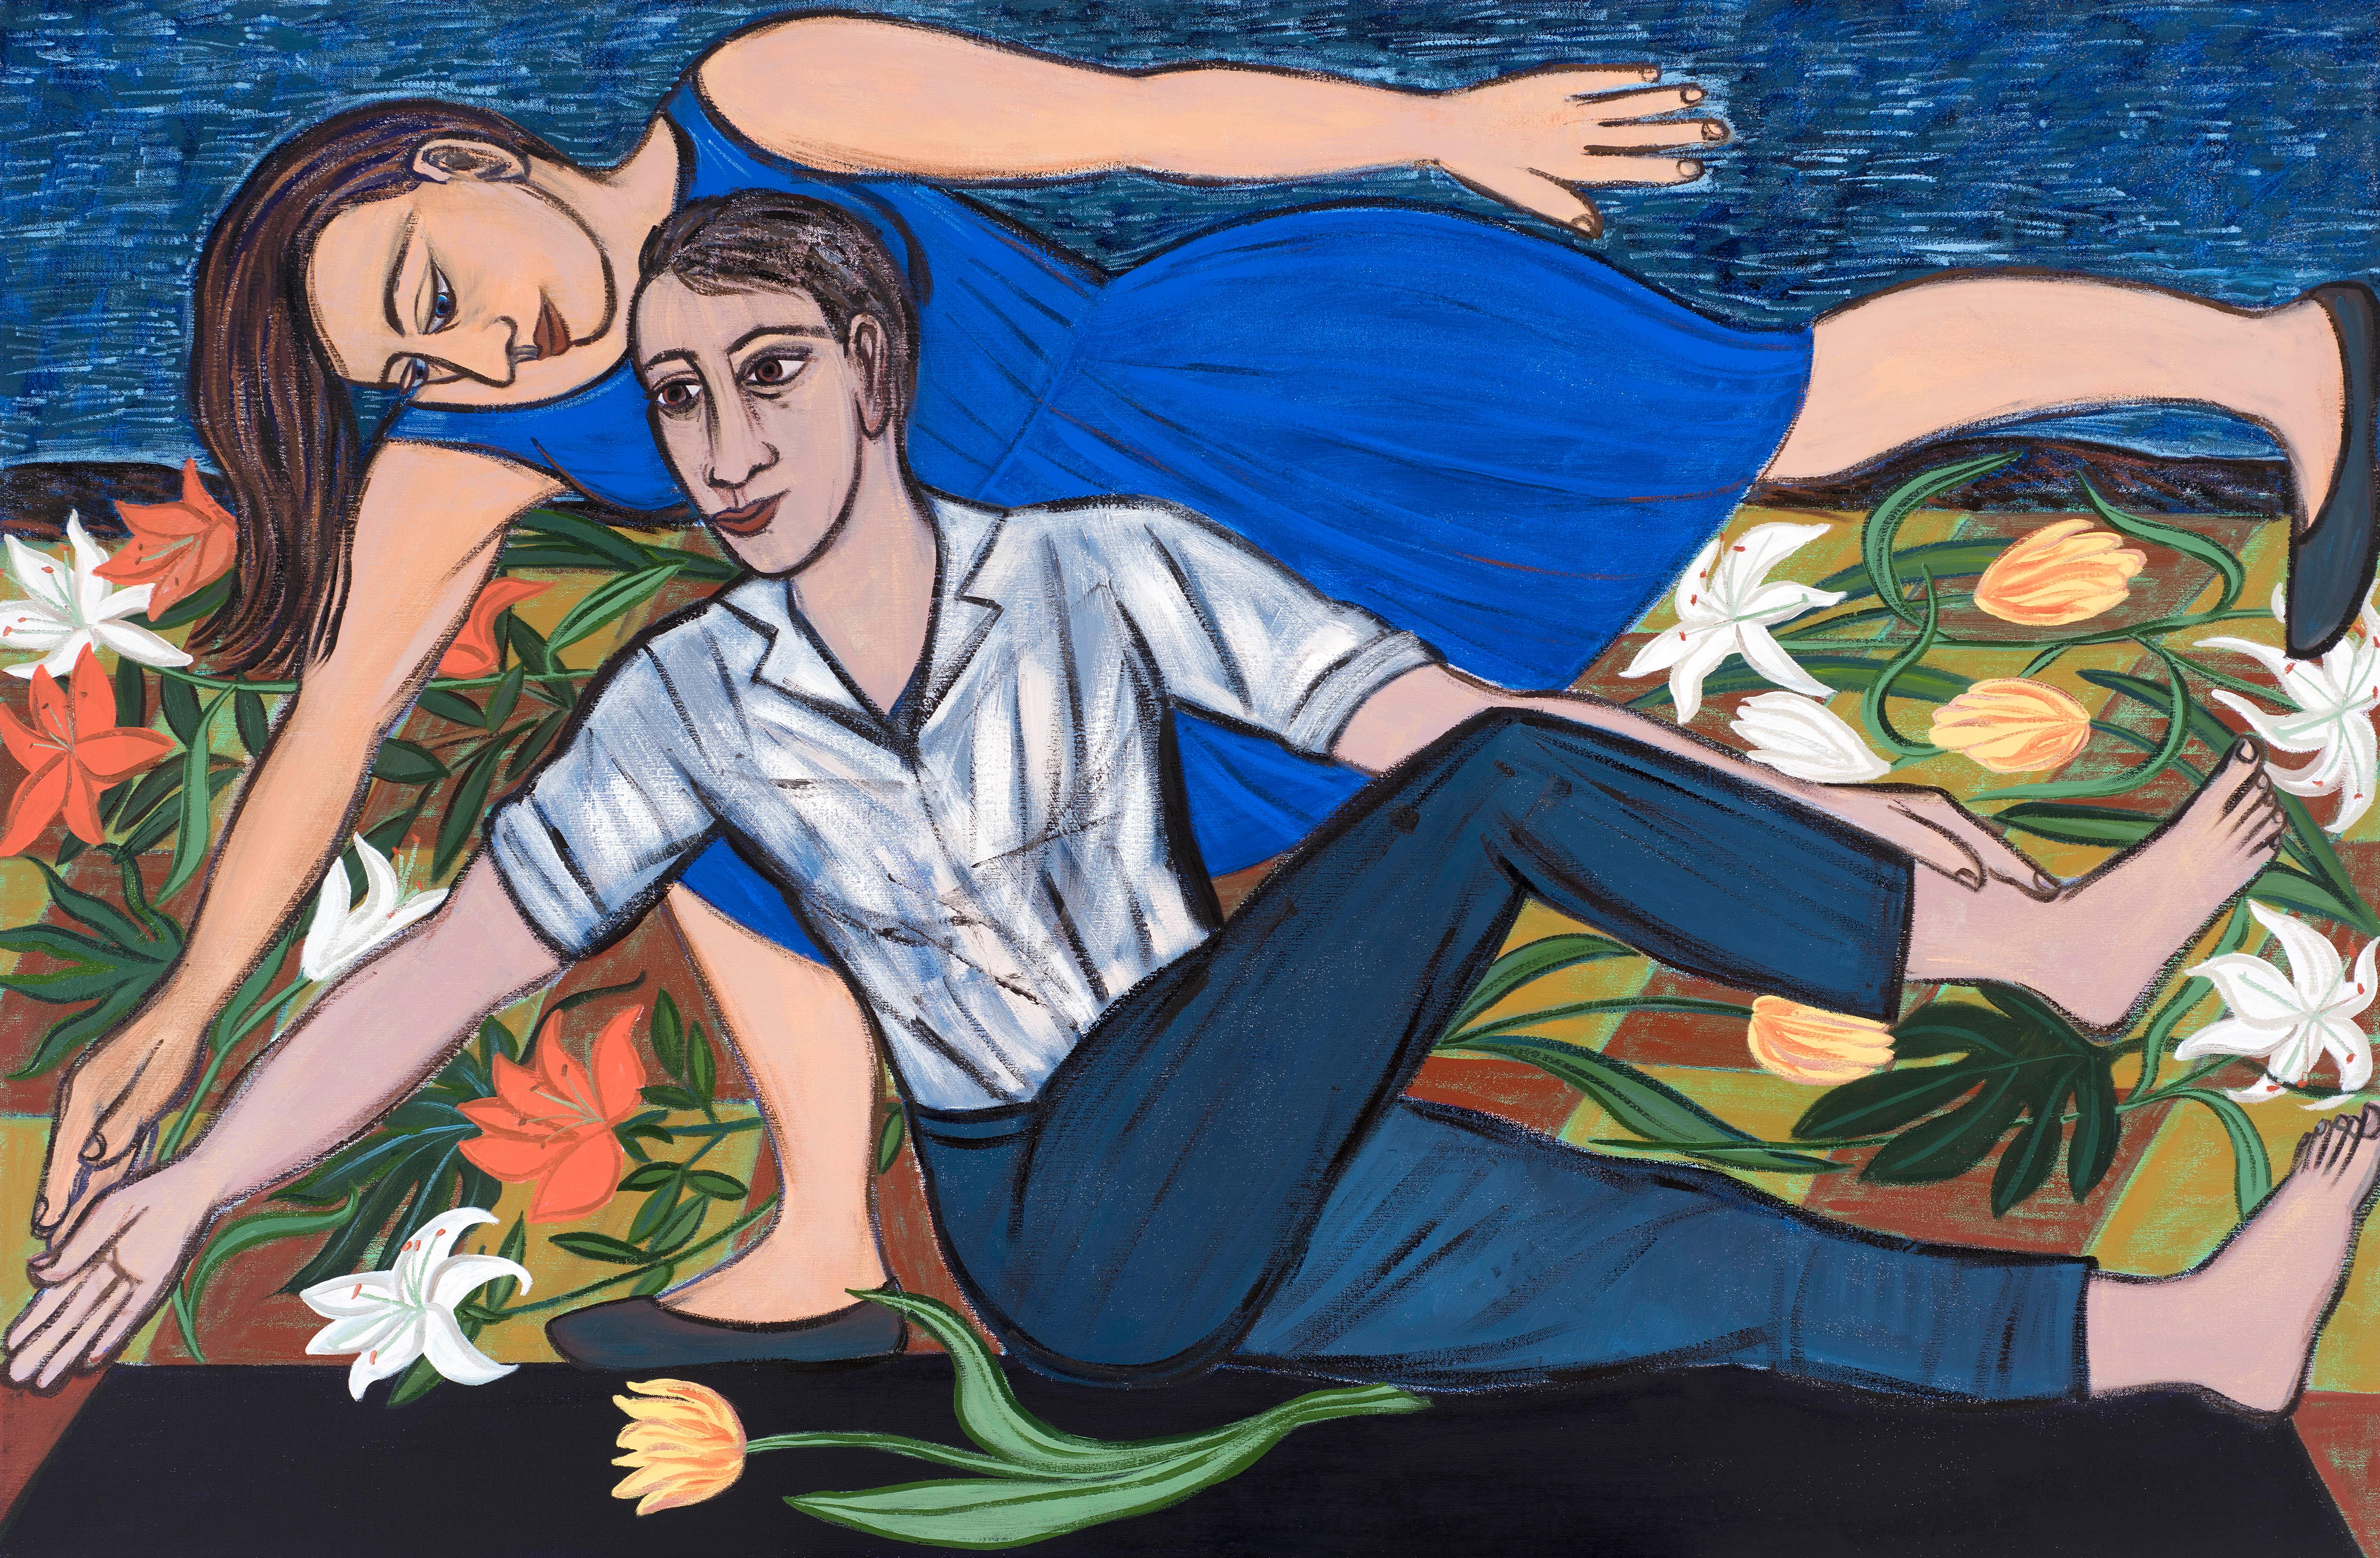 Blaues Duett, 2016 - Eileen Cooper (Figurative Malerei)

Im Laufe ihrer Karriere hat Eileen Cooper (geb. 1953) figurative Gemälde geschaffen, die Themen wie Fruchtbarkeit, Sexualität, Mutterschaft, Leben und Tod behandeln. Cooper, der fast ein